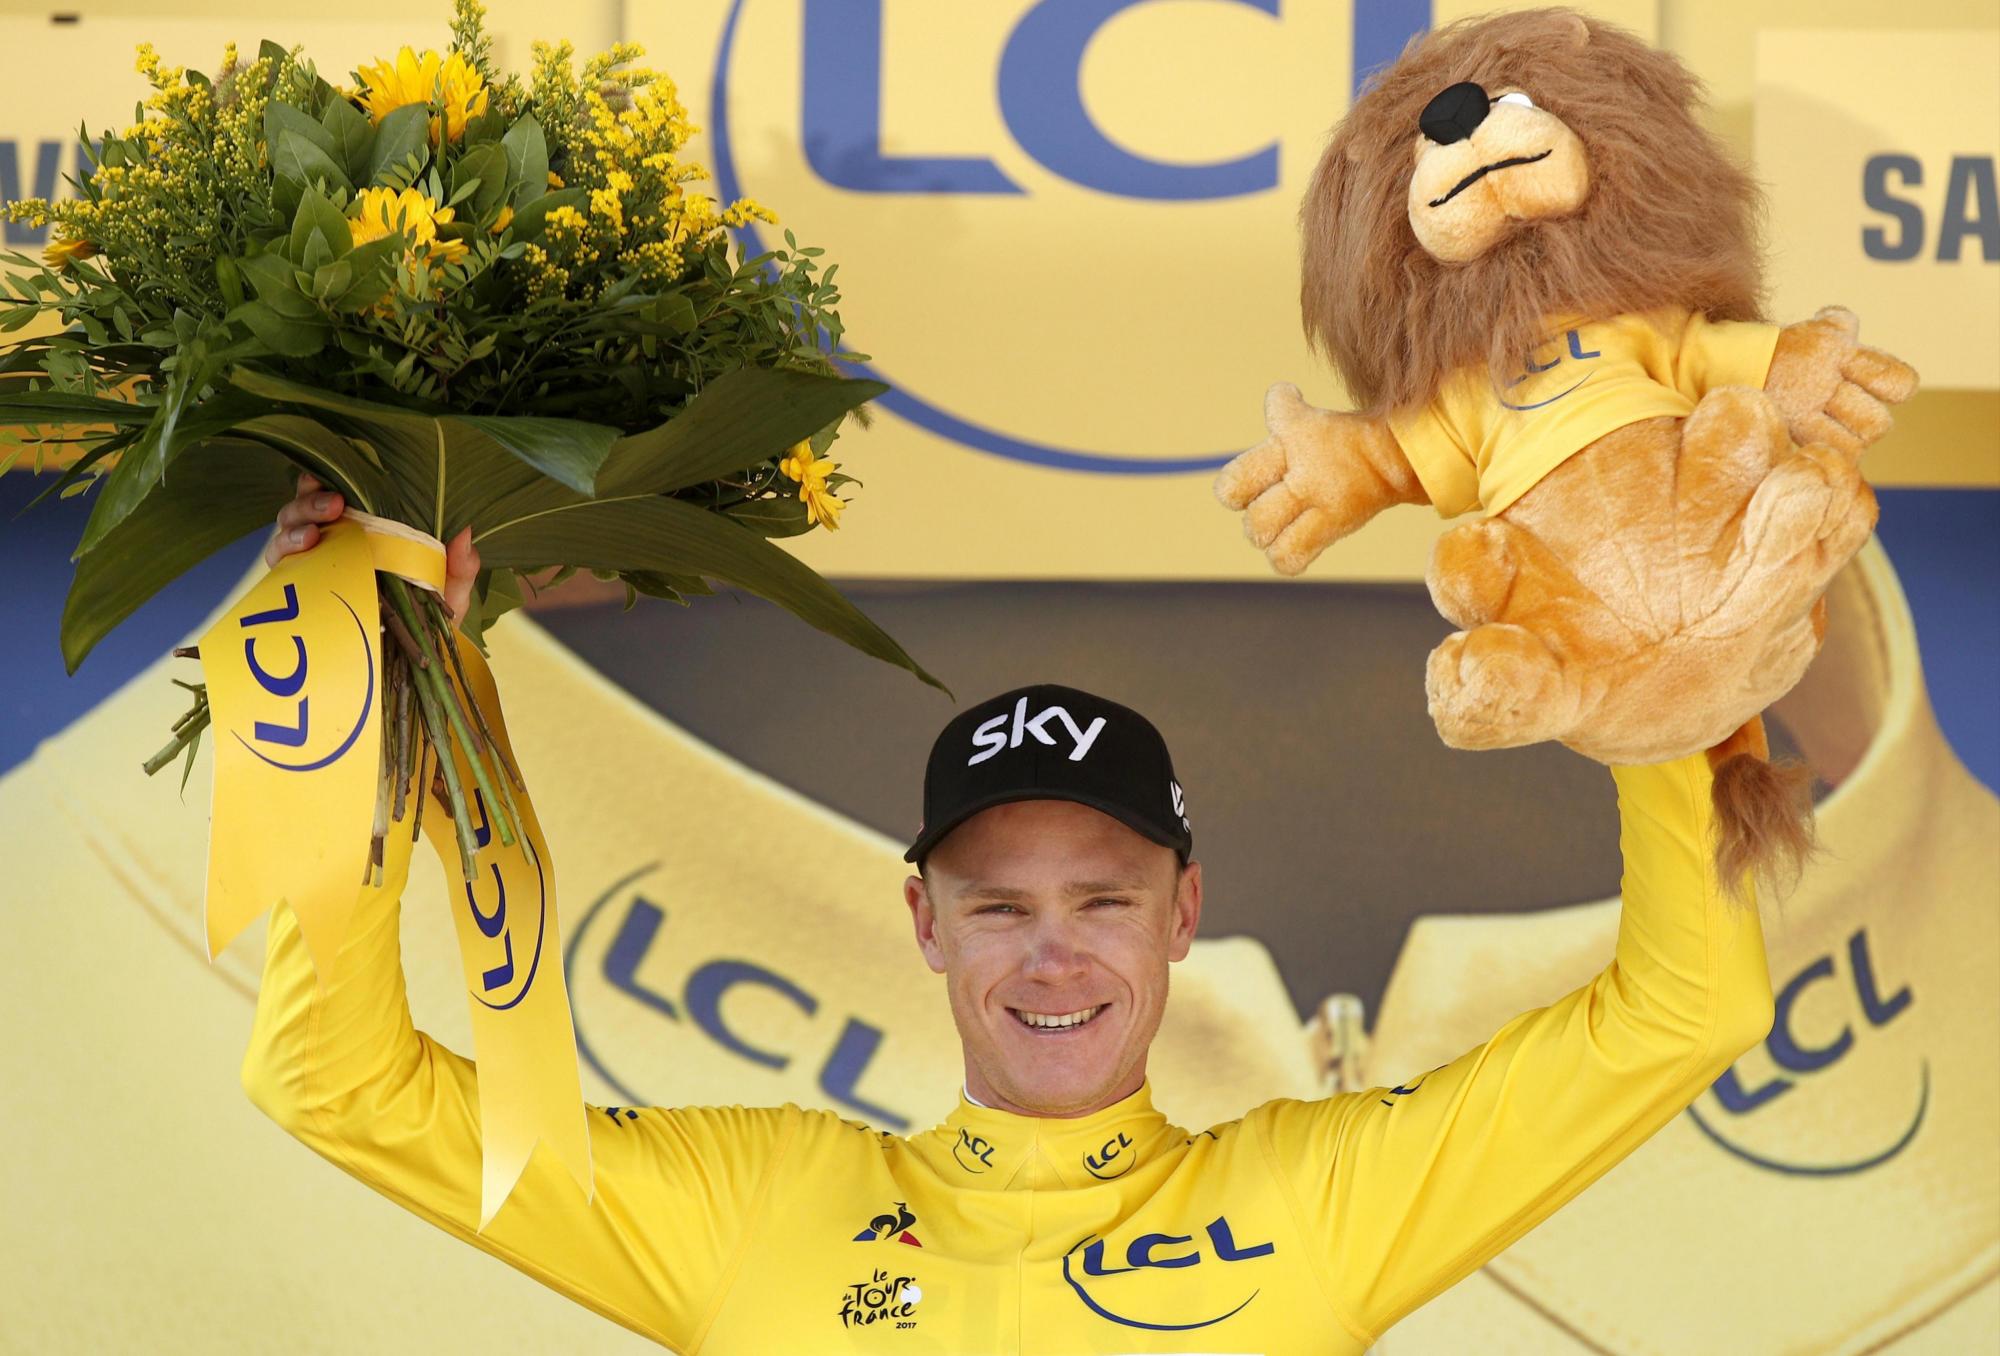 El ciclista del Reino Unido del equipo Sky, Christopher Froome, celebra en el podio su maillot (camiseta) amarillo de líder tras la decimonovena etapa del Tour de Francia a su llegada a Salon-De-Provence (Francia) el  21 de julio del 2017.